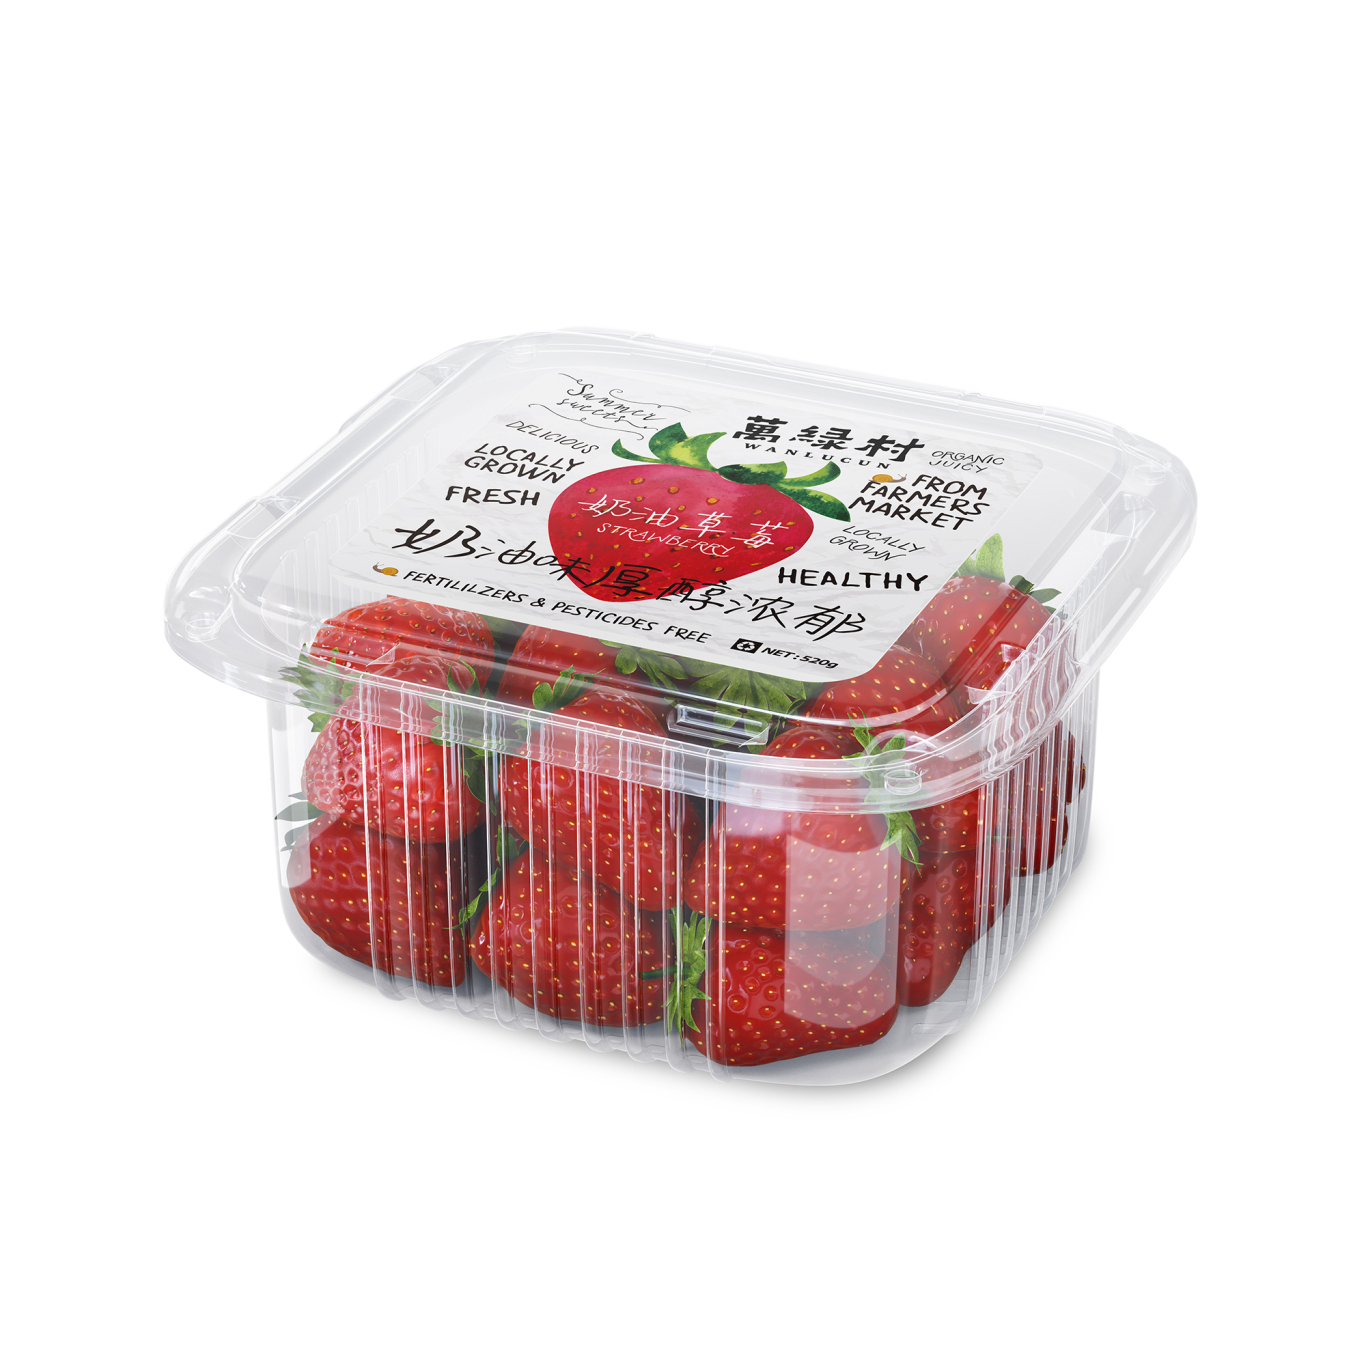 萬綠村草莓番茄農產品包裝設計圖11